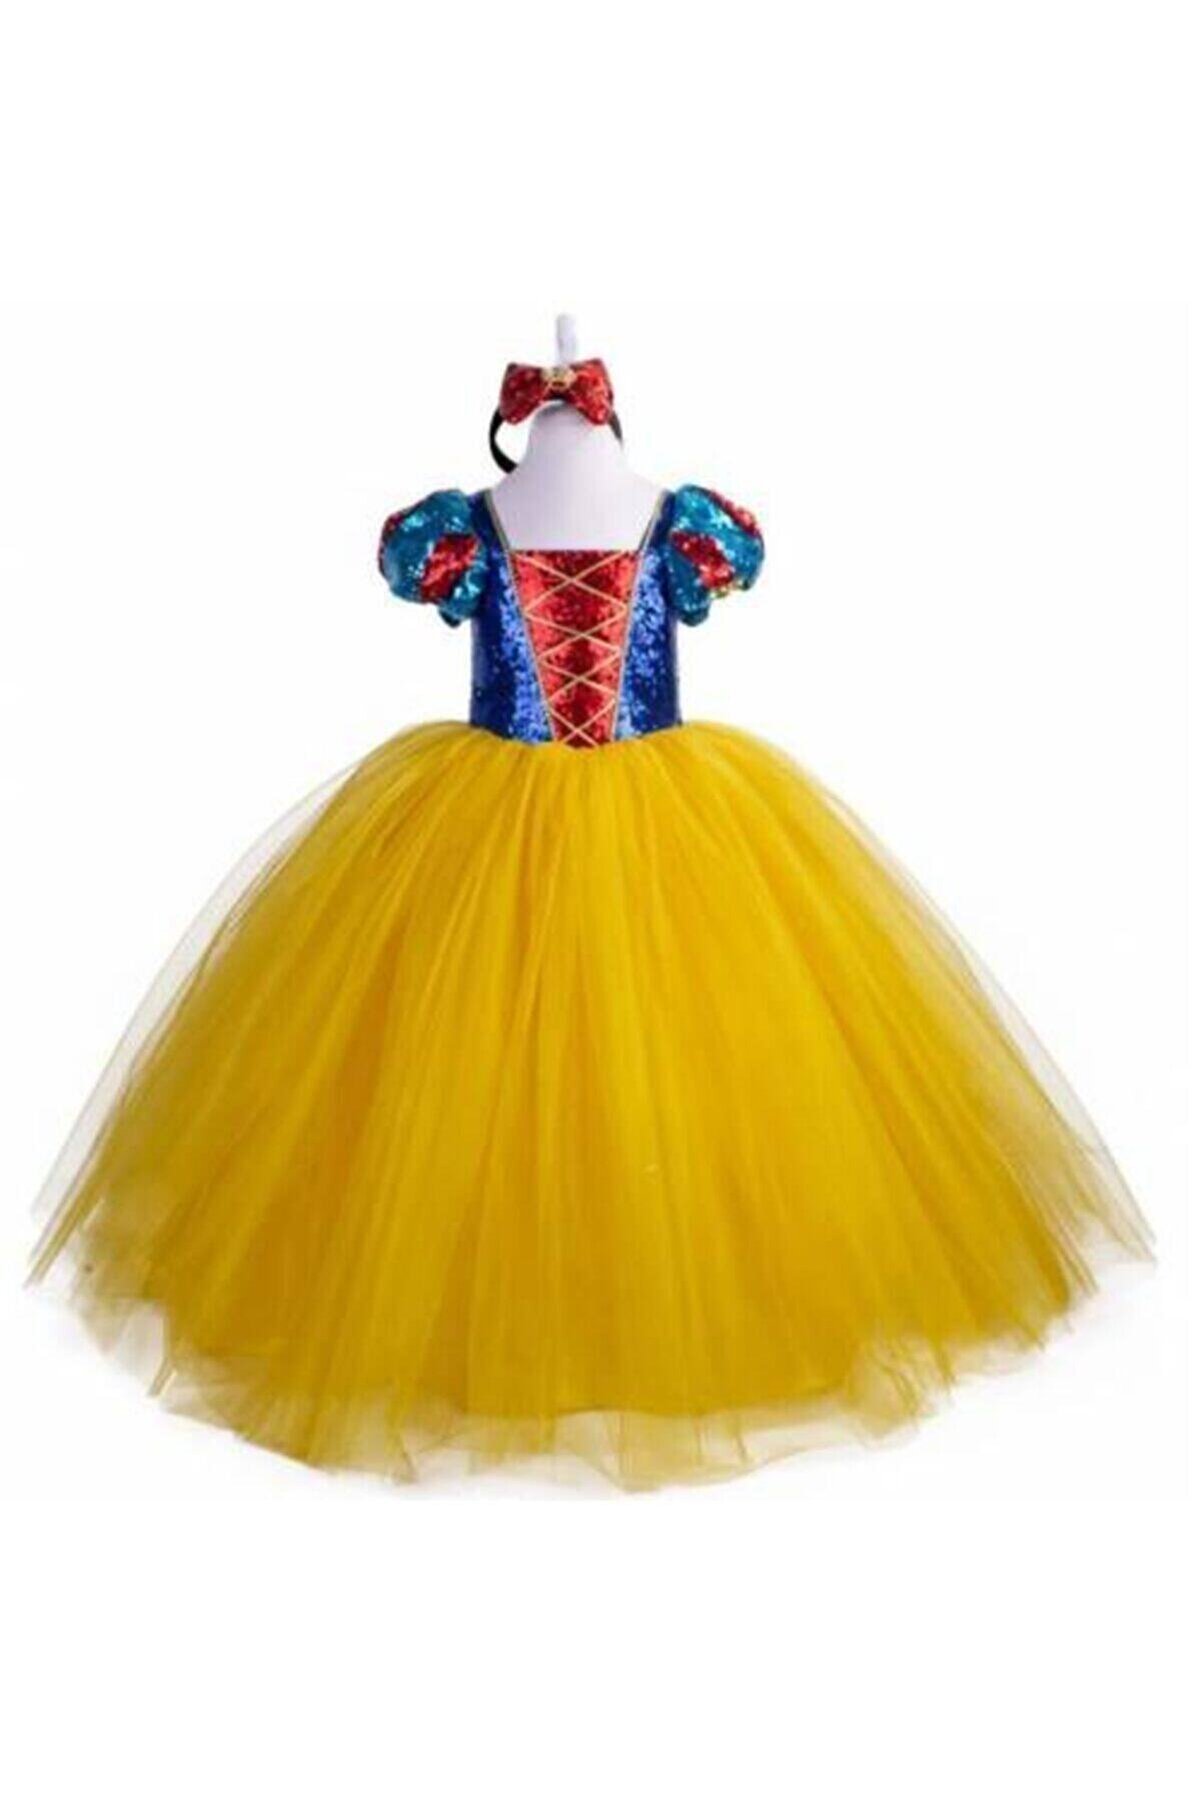 damdikids Kız Çocuk Pelerin Taç Tarlatanlı Pamuk Prenses Prenses Elbise Pamuk Prenses Kostüm